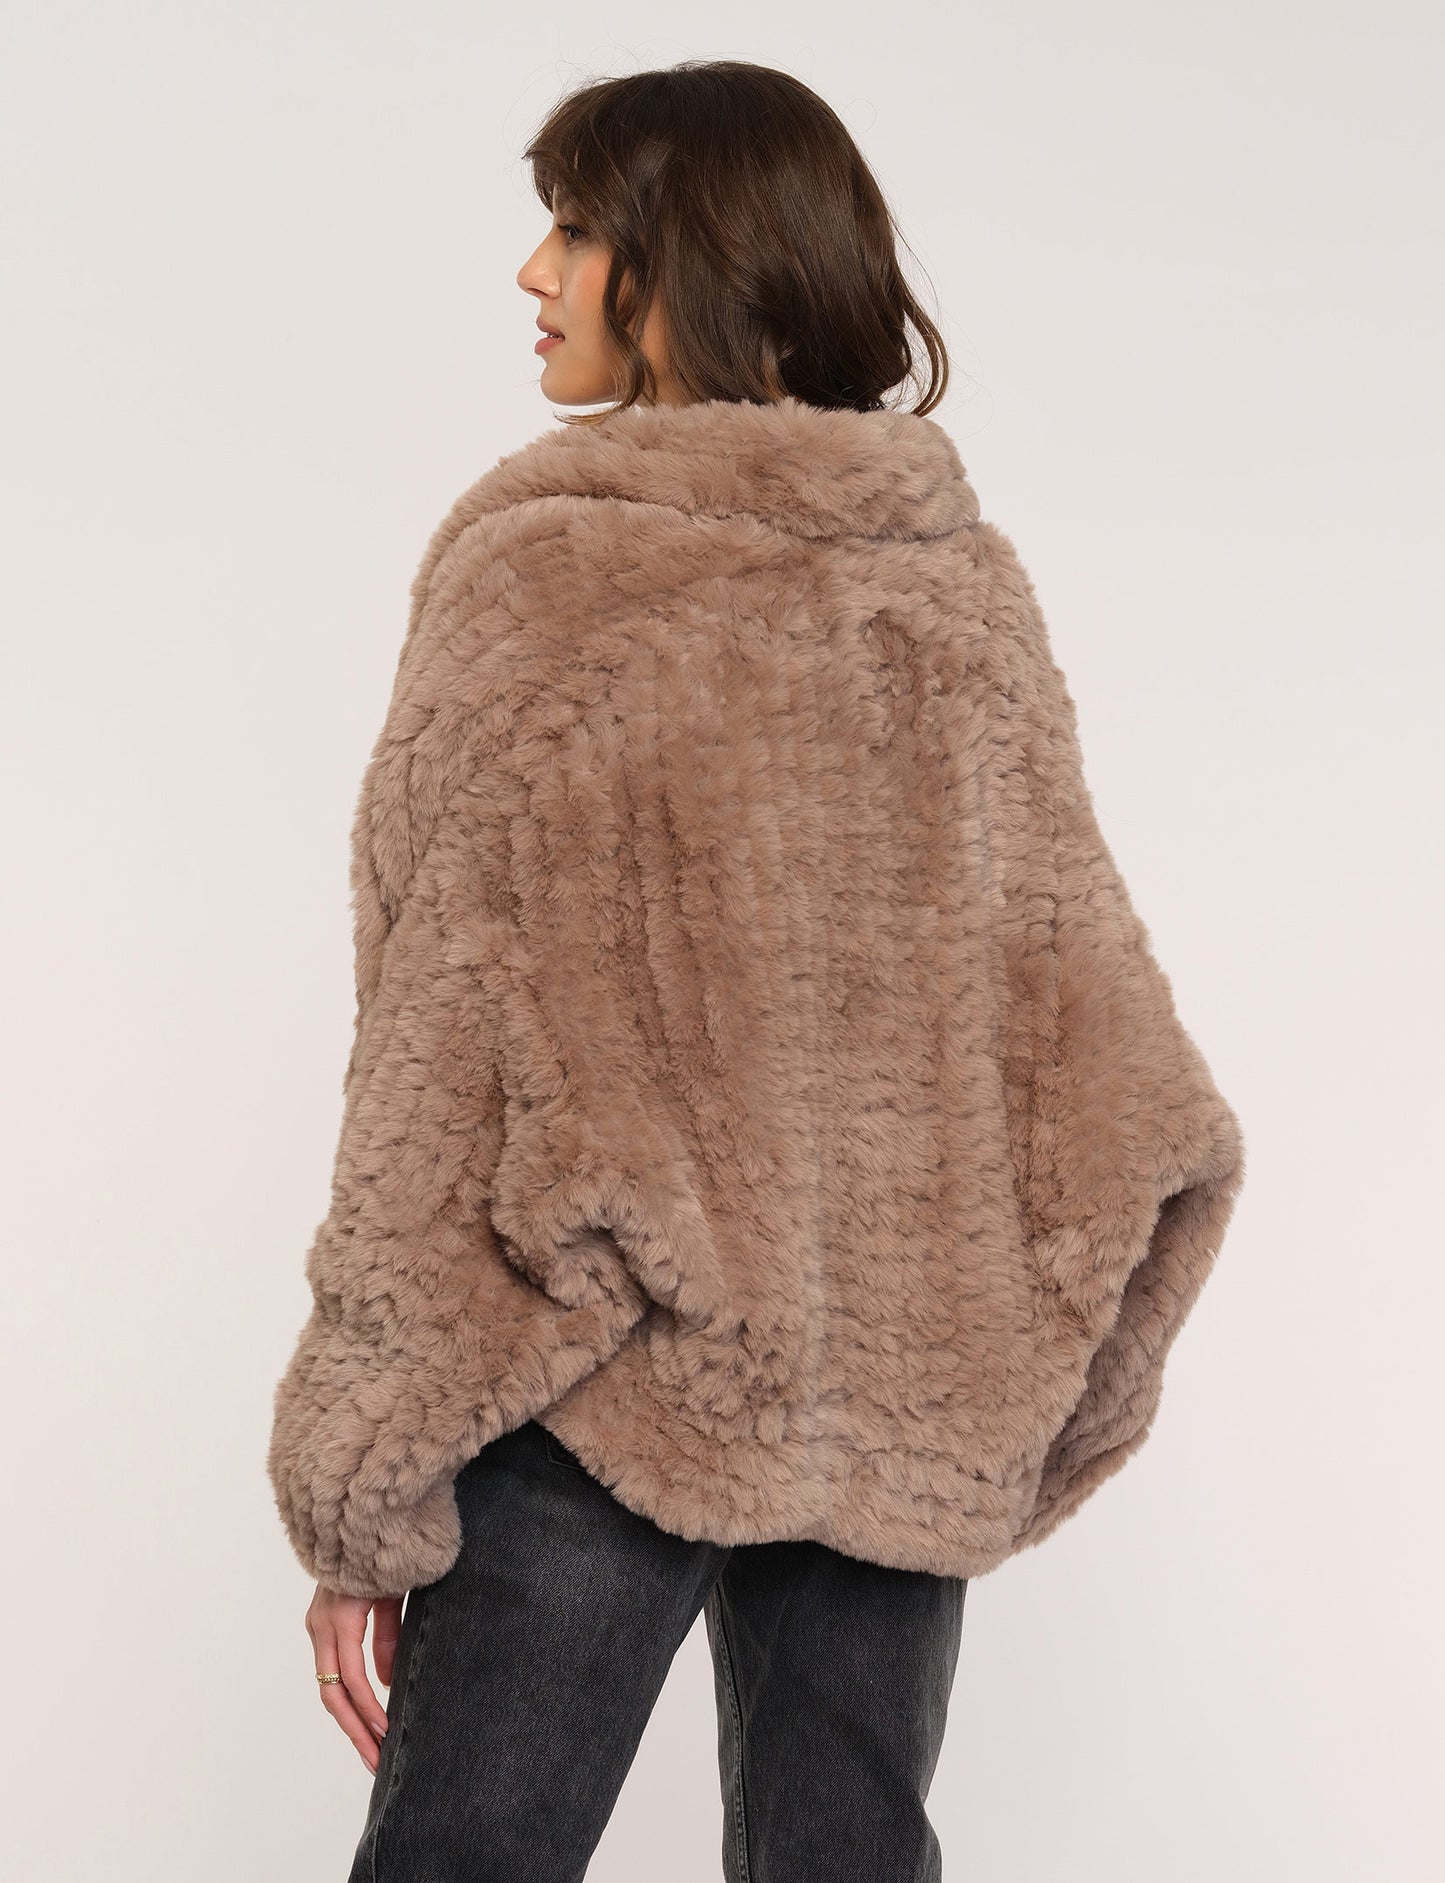 Heartloom, Sally Faux Fur Jacket in Praline - Boutique Dandelion